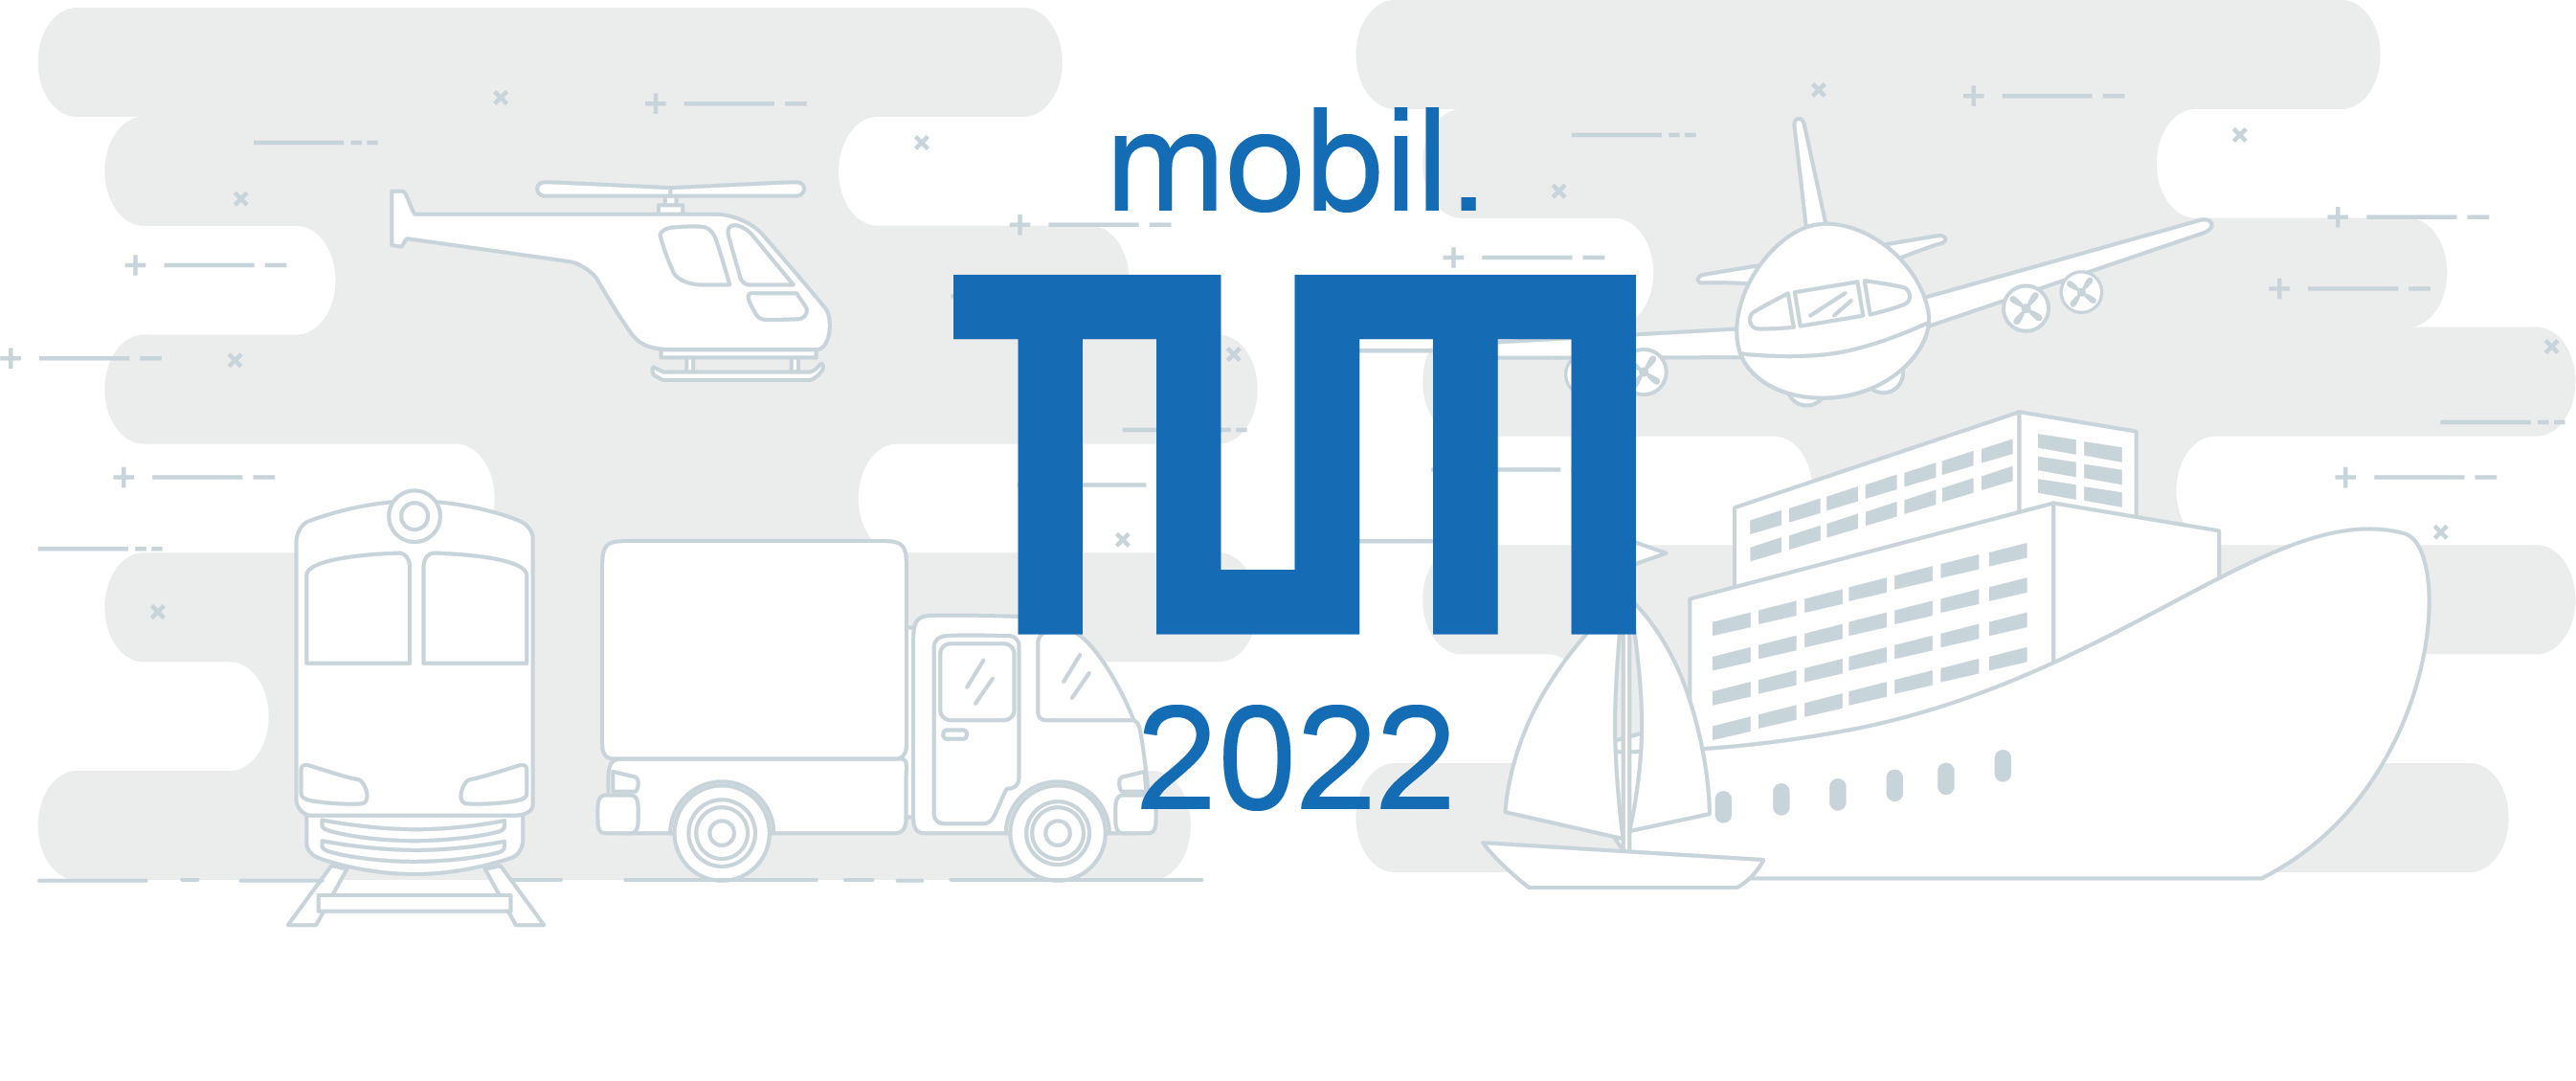 mobilTUM_2022